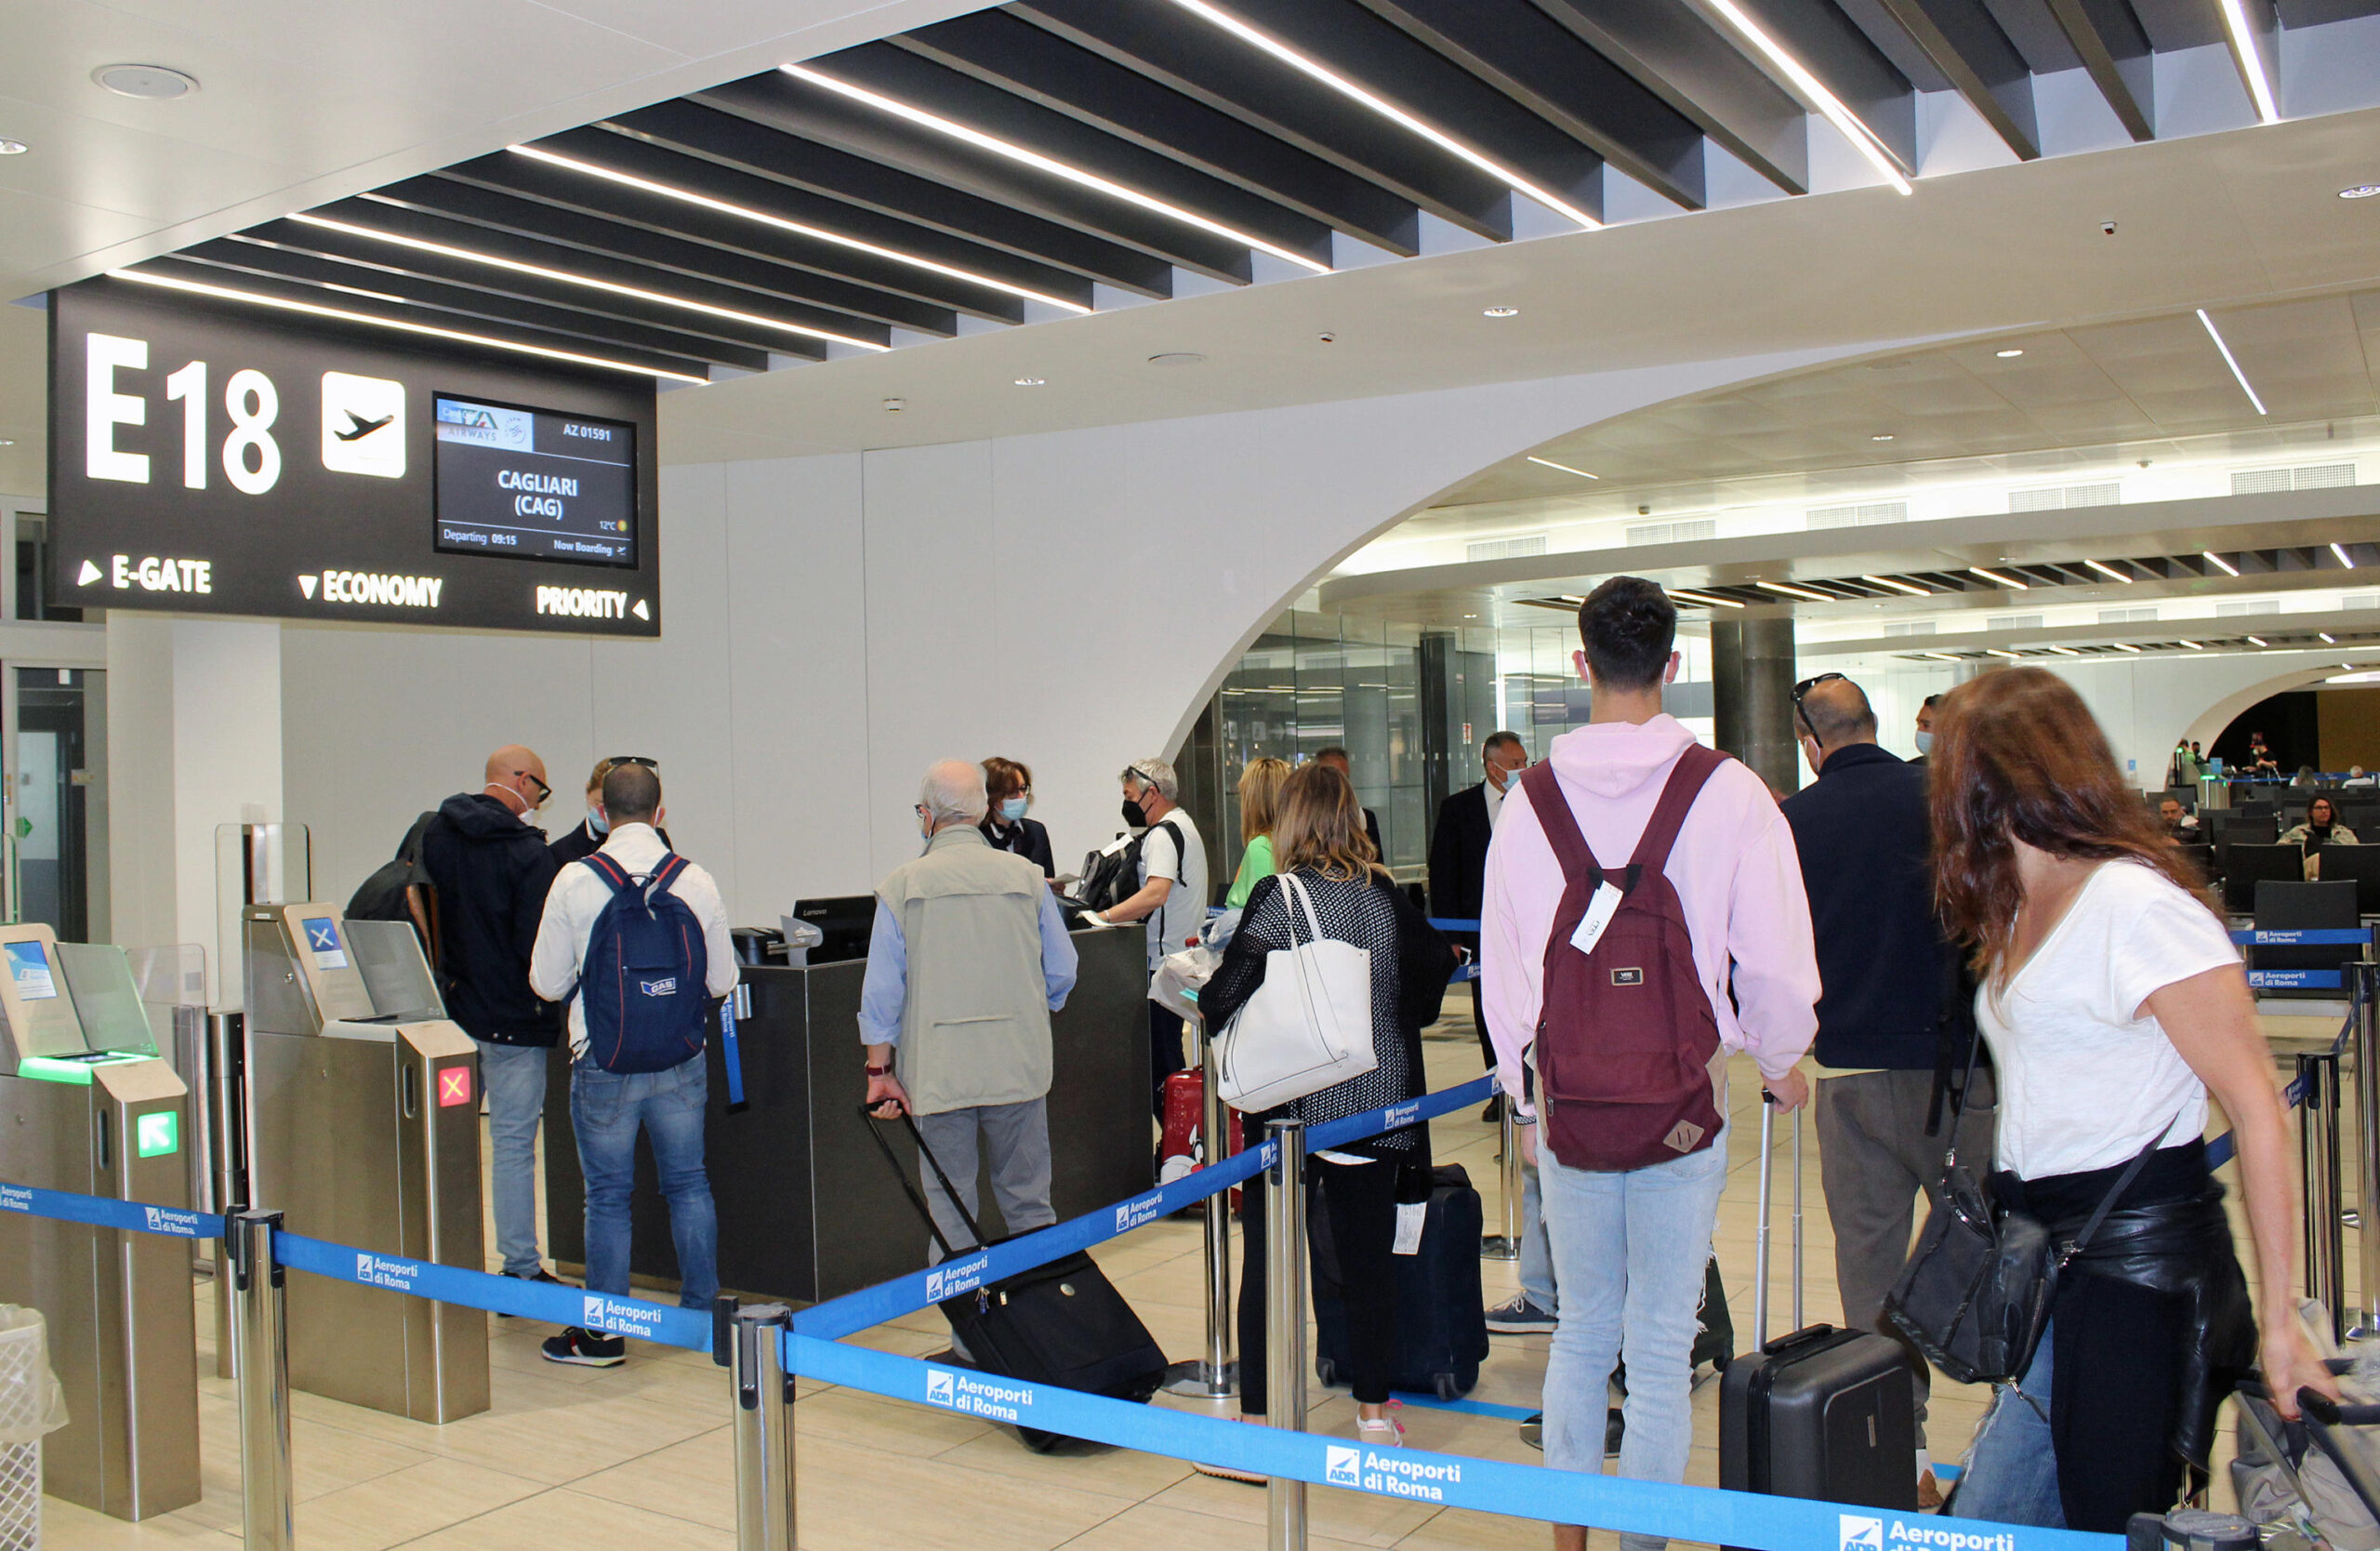 Hanno debuttato oggi i voli di Ita Airways e da e per Sardegna. Il primo volo è stato l'Az1561 da Cagliari a Linate alle ore 6.35. Il primo volo da Cagliari verso Roma, l'Az1588, operato da un Airbus A320 dedicato al grande campione sardo Gigi Riva, è arrivato alle 7.53 all' aeroporto di Fiumicino. Con la sigla AZ 1591 il primo volo da Fiumicino verso Cagliari è previsto in partenza alle 9.15. Ita Airways opera voli diretti da Roma Fiumicino e Milano Linate verso Cagliari, Alghero e Olbia.
ANSA/Telenews